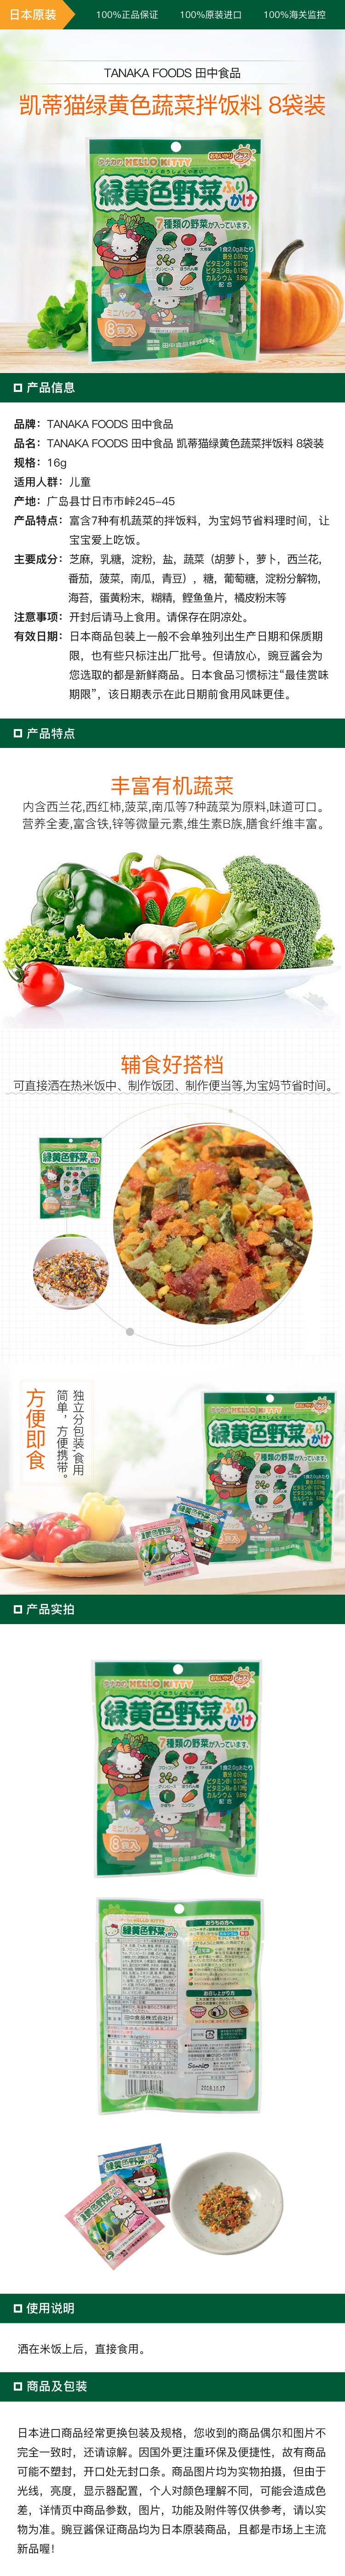 [日本直邮] TANAKA FOODS 田中食品 凯蒂猫绿黄色蔬菜拌饭料 8袋装